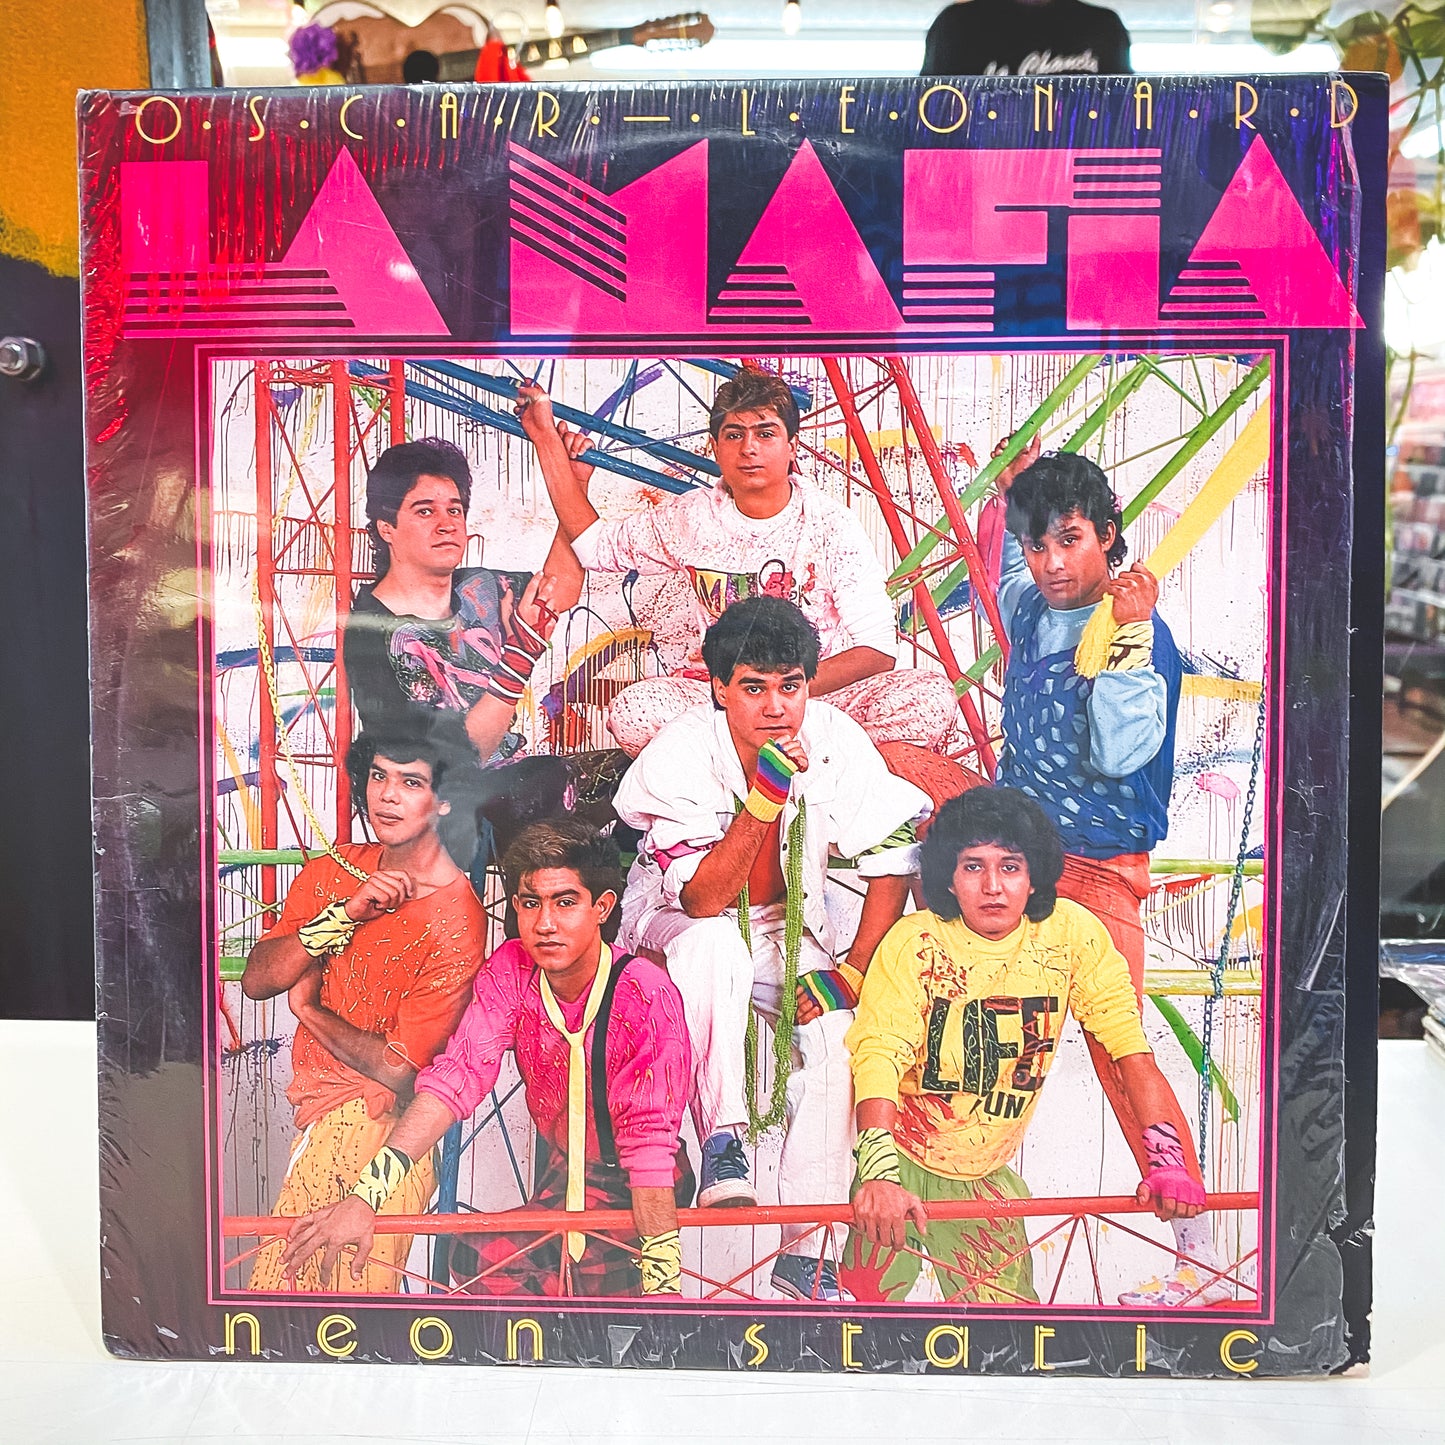 La Mafia - Neon Static (Vinyl)